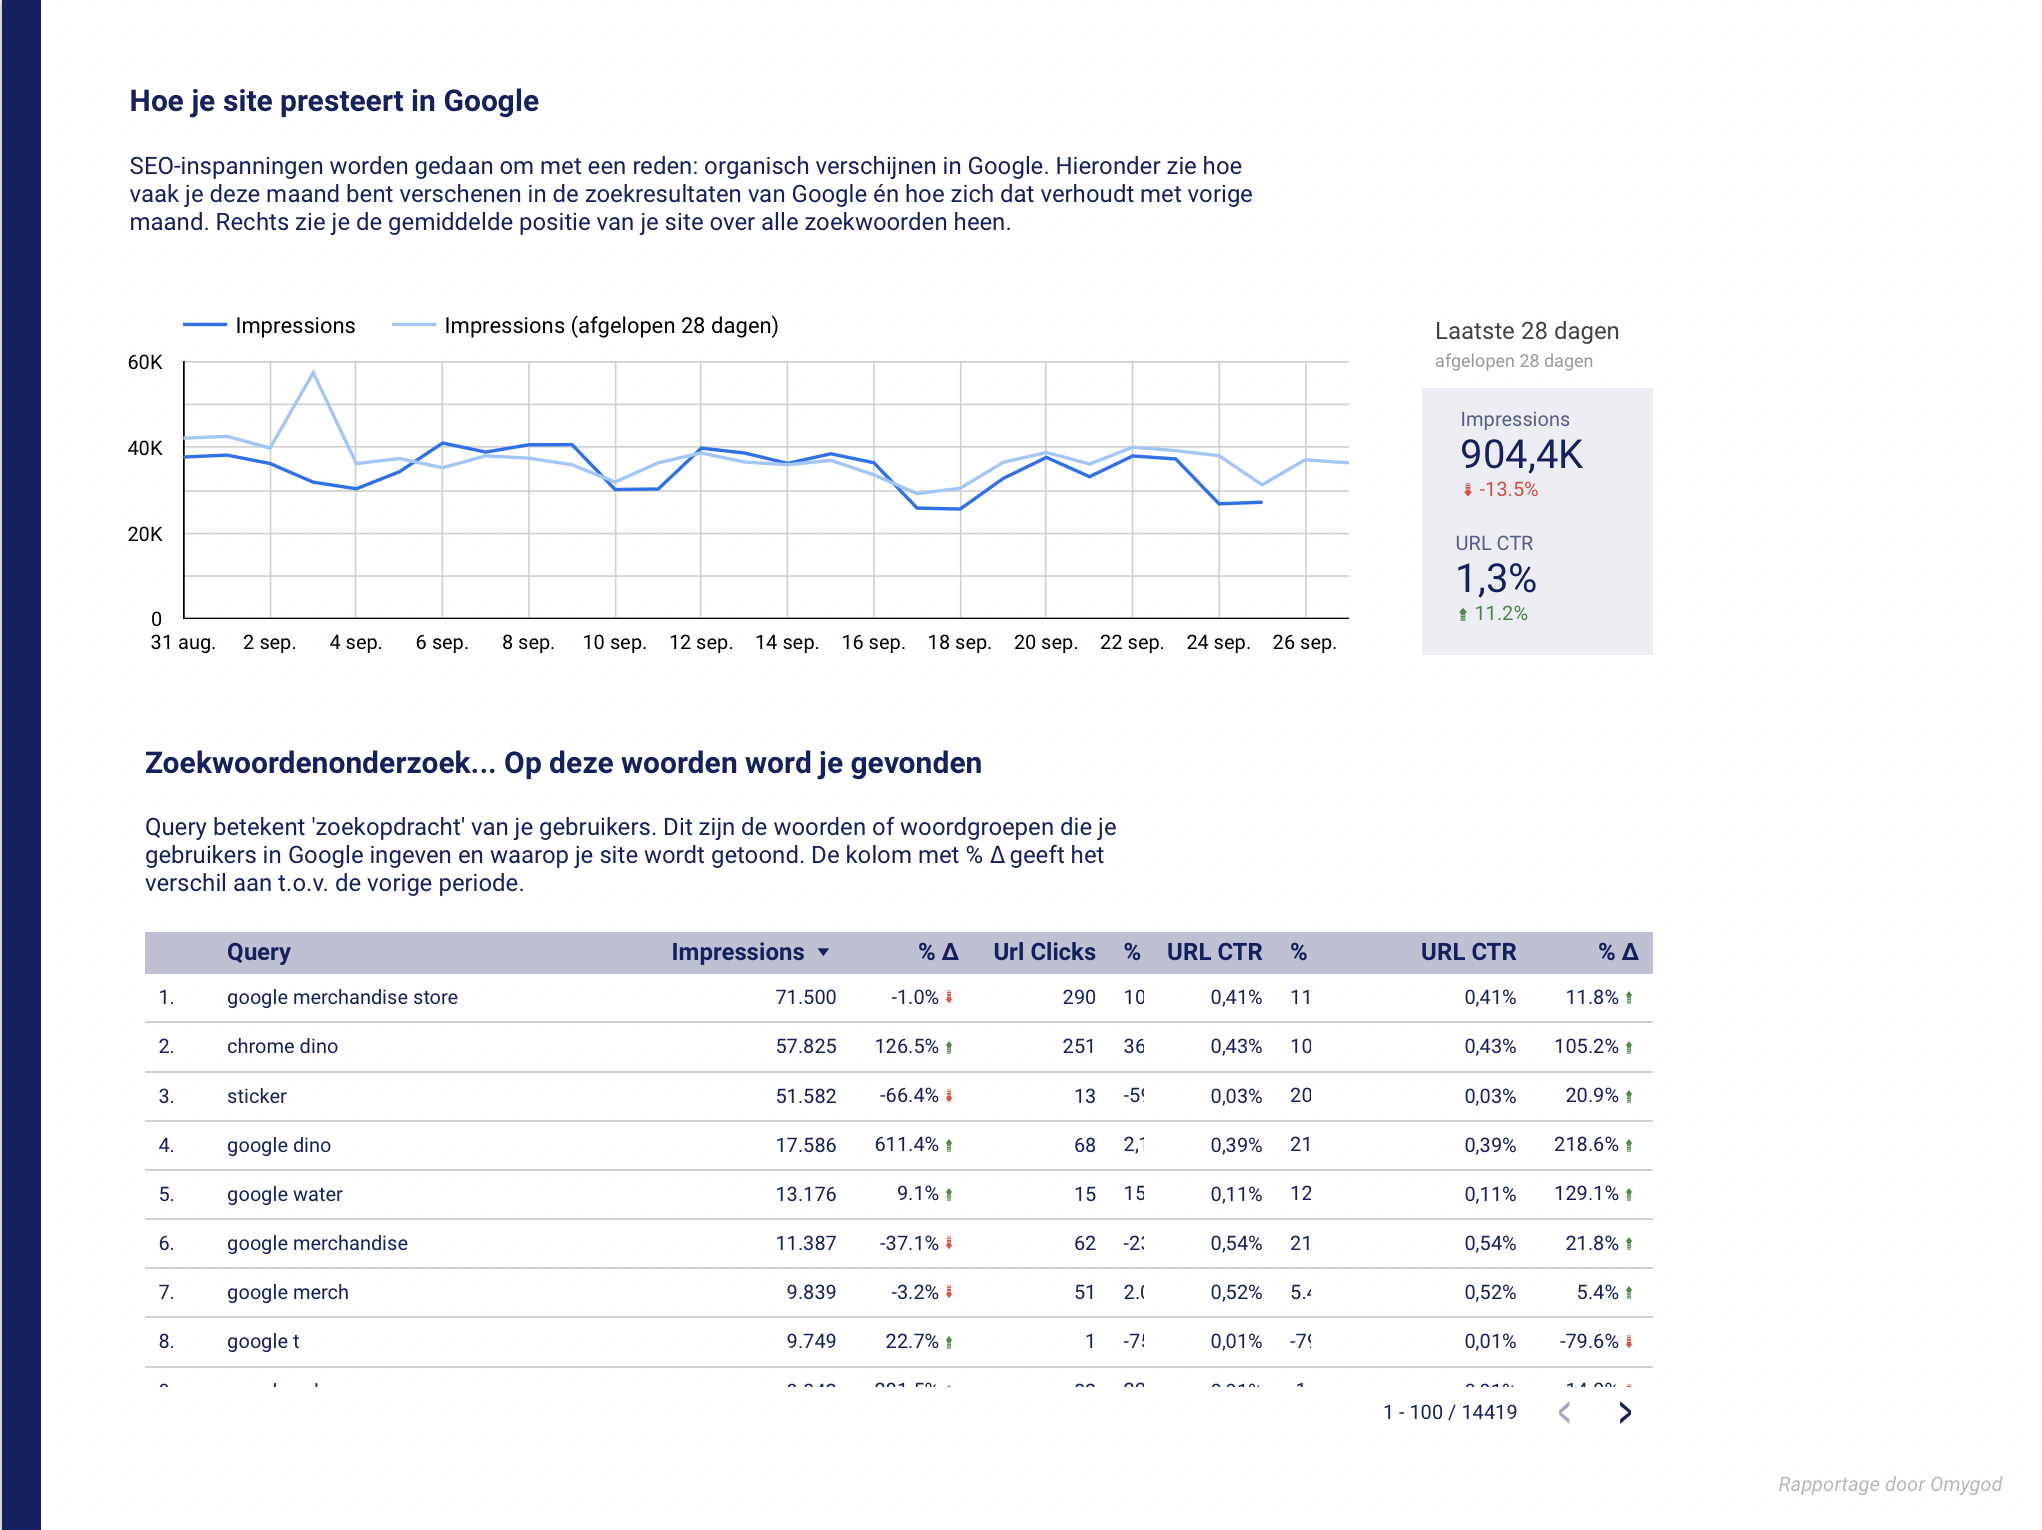 Omygoddelijk rapport van maandelijkse statistieken in Google | Google Merchandise Store